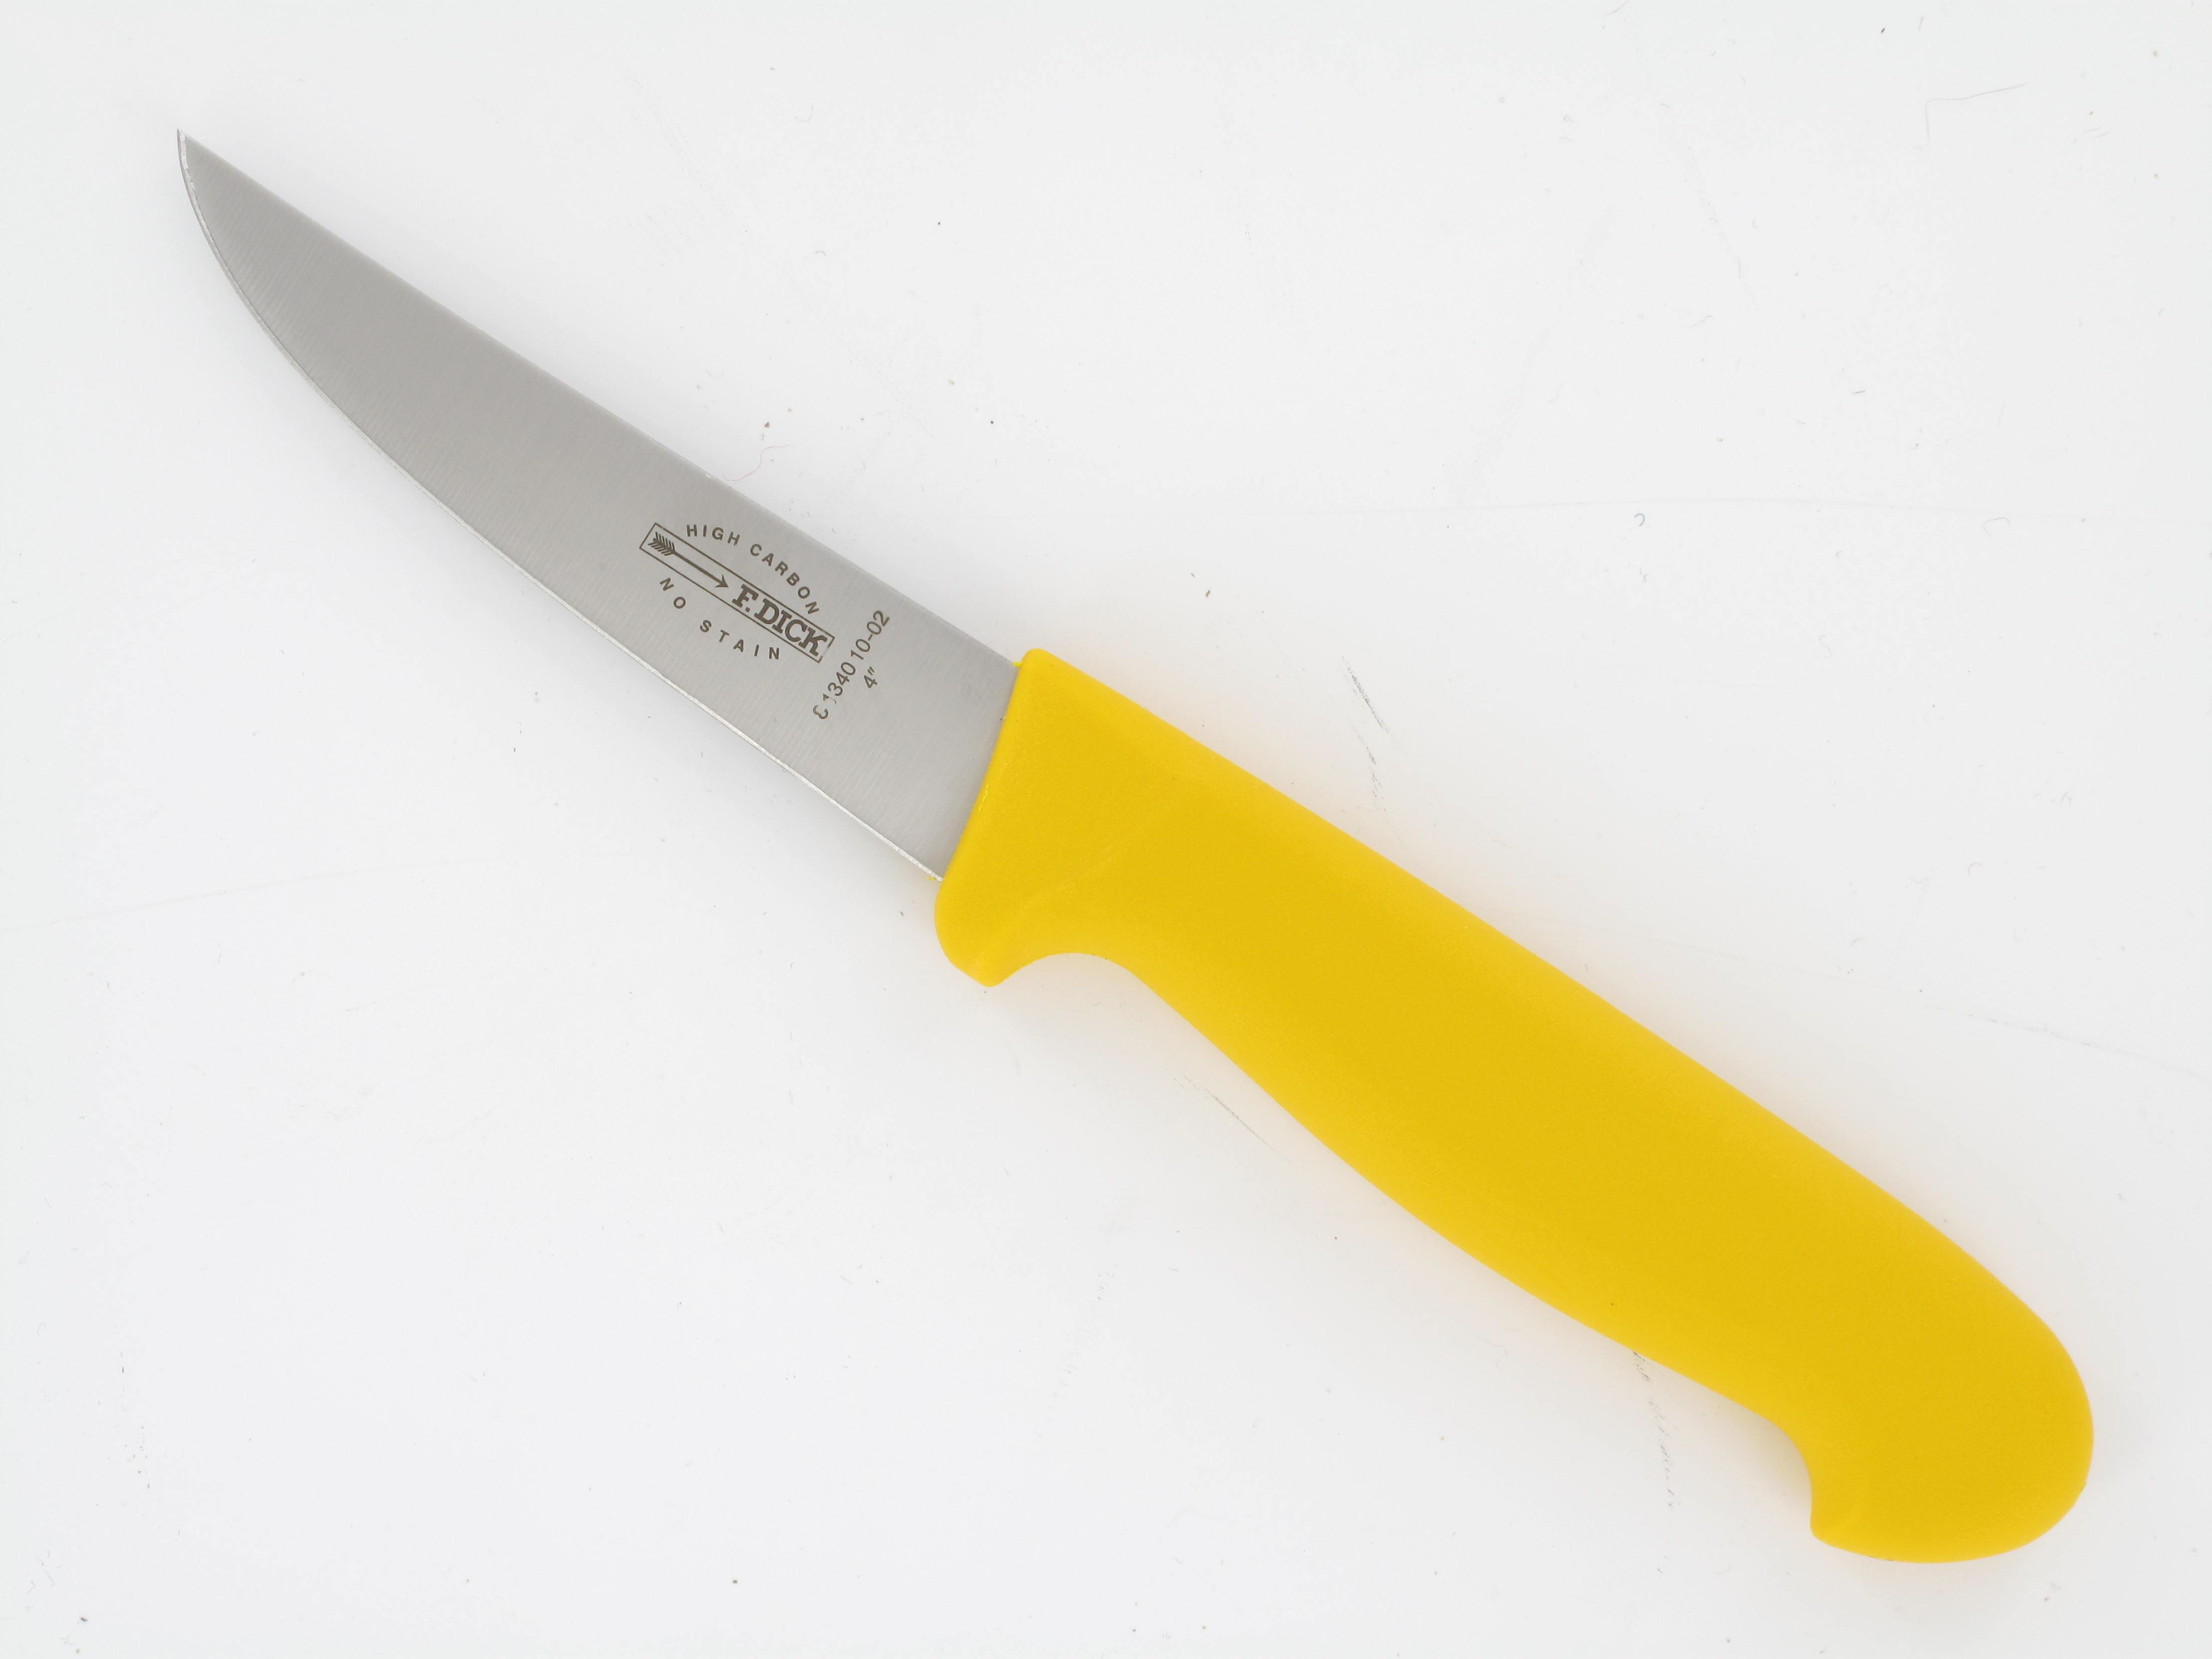 DICK Aufbrechmesser, Messer zum Ringeln, 10 cm, zur Versorgung von Haar-, Raubwild und Geflügel